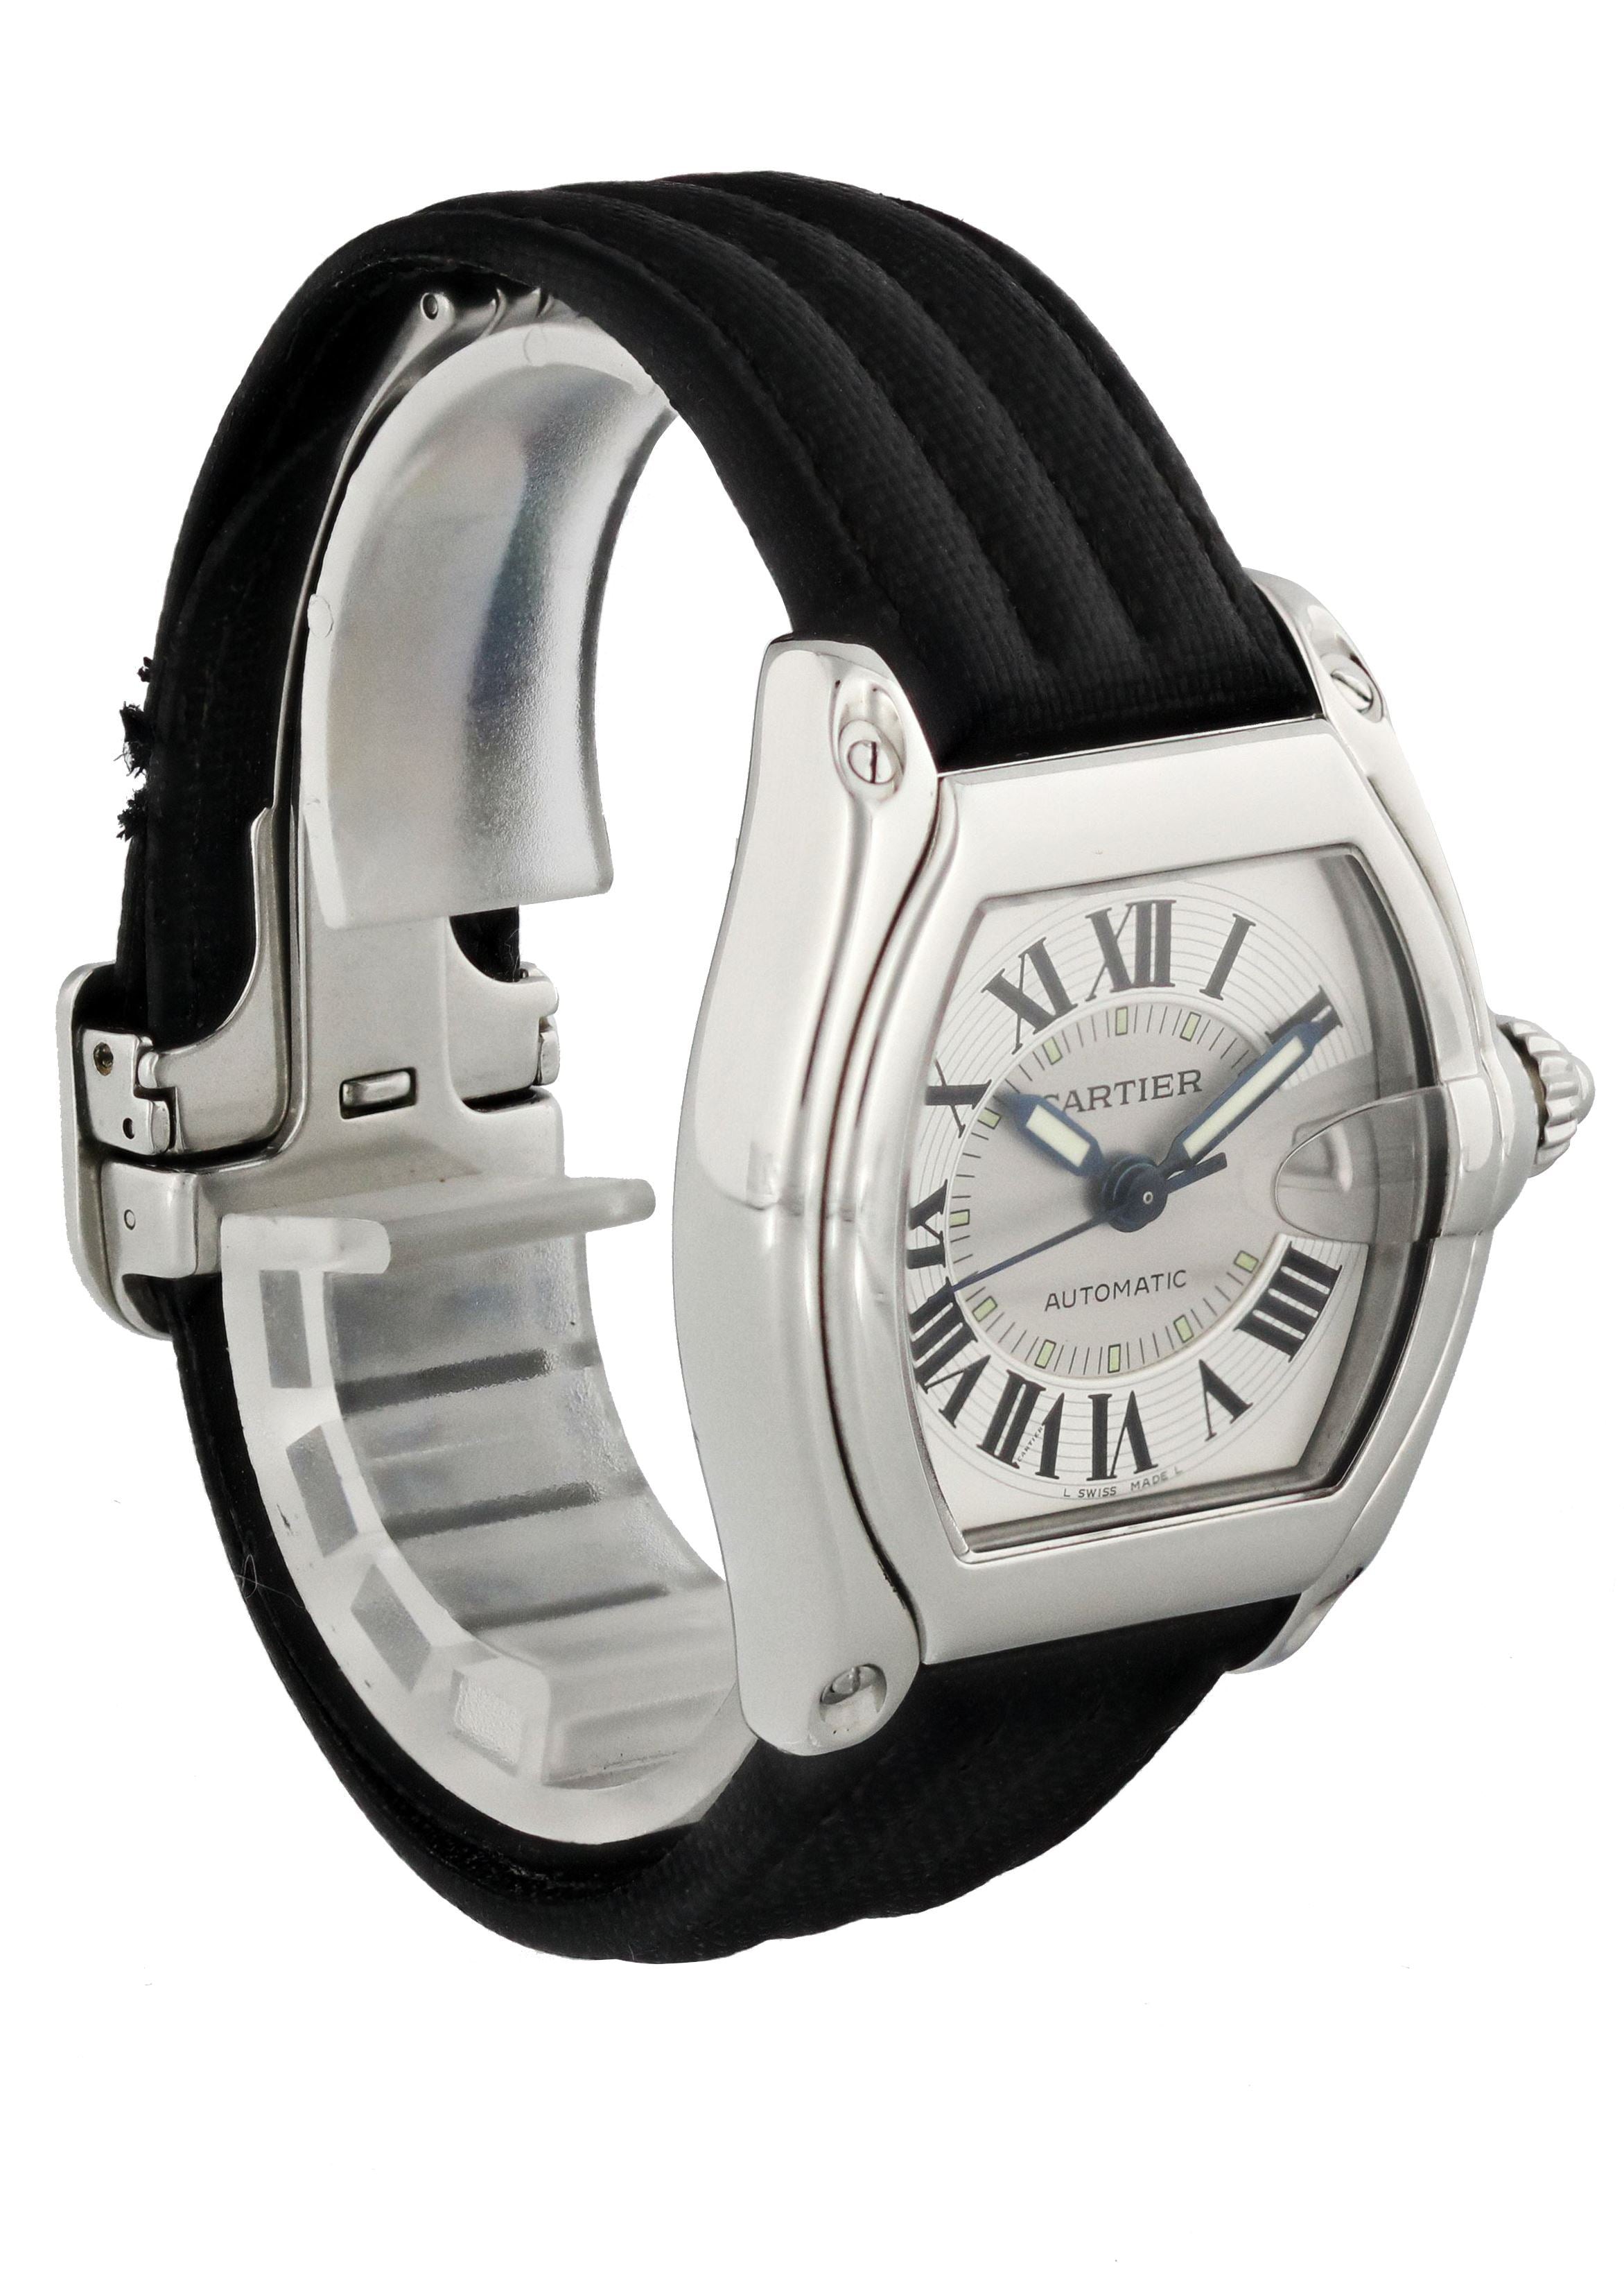 Cartier Roadster 2510 мужские часы | eBay